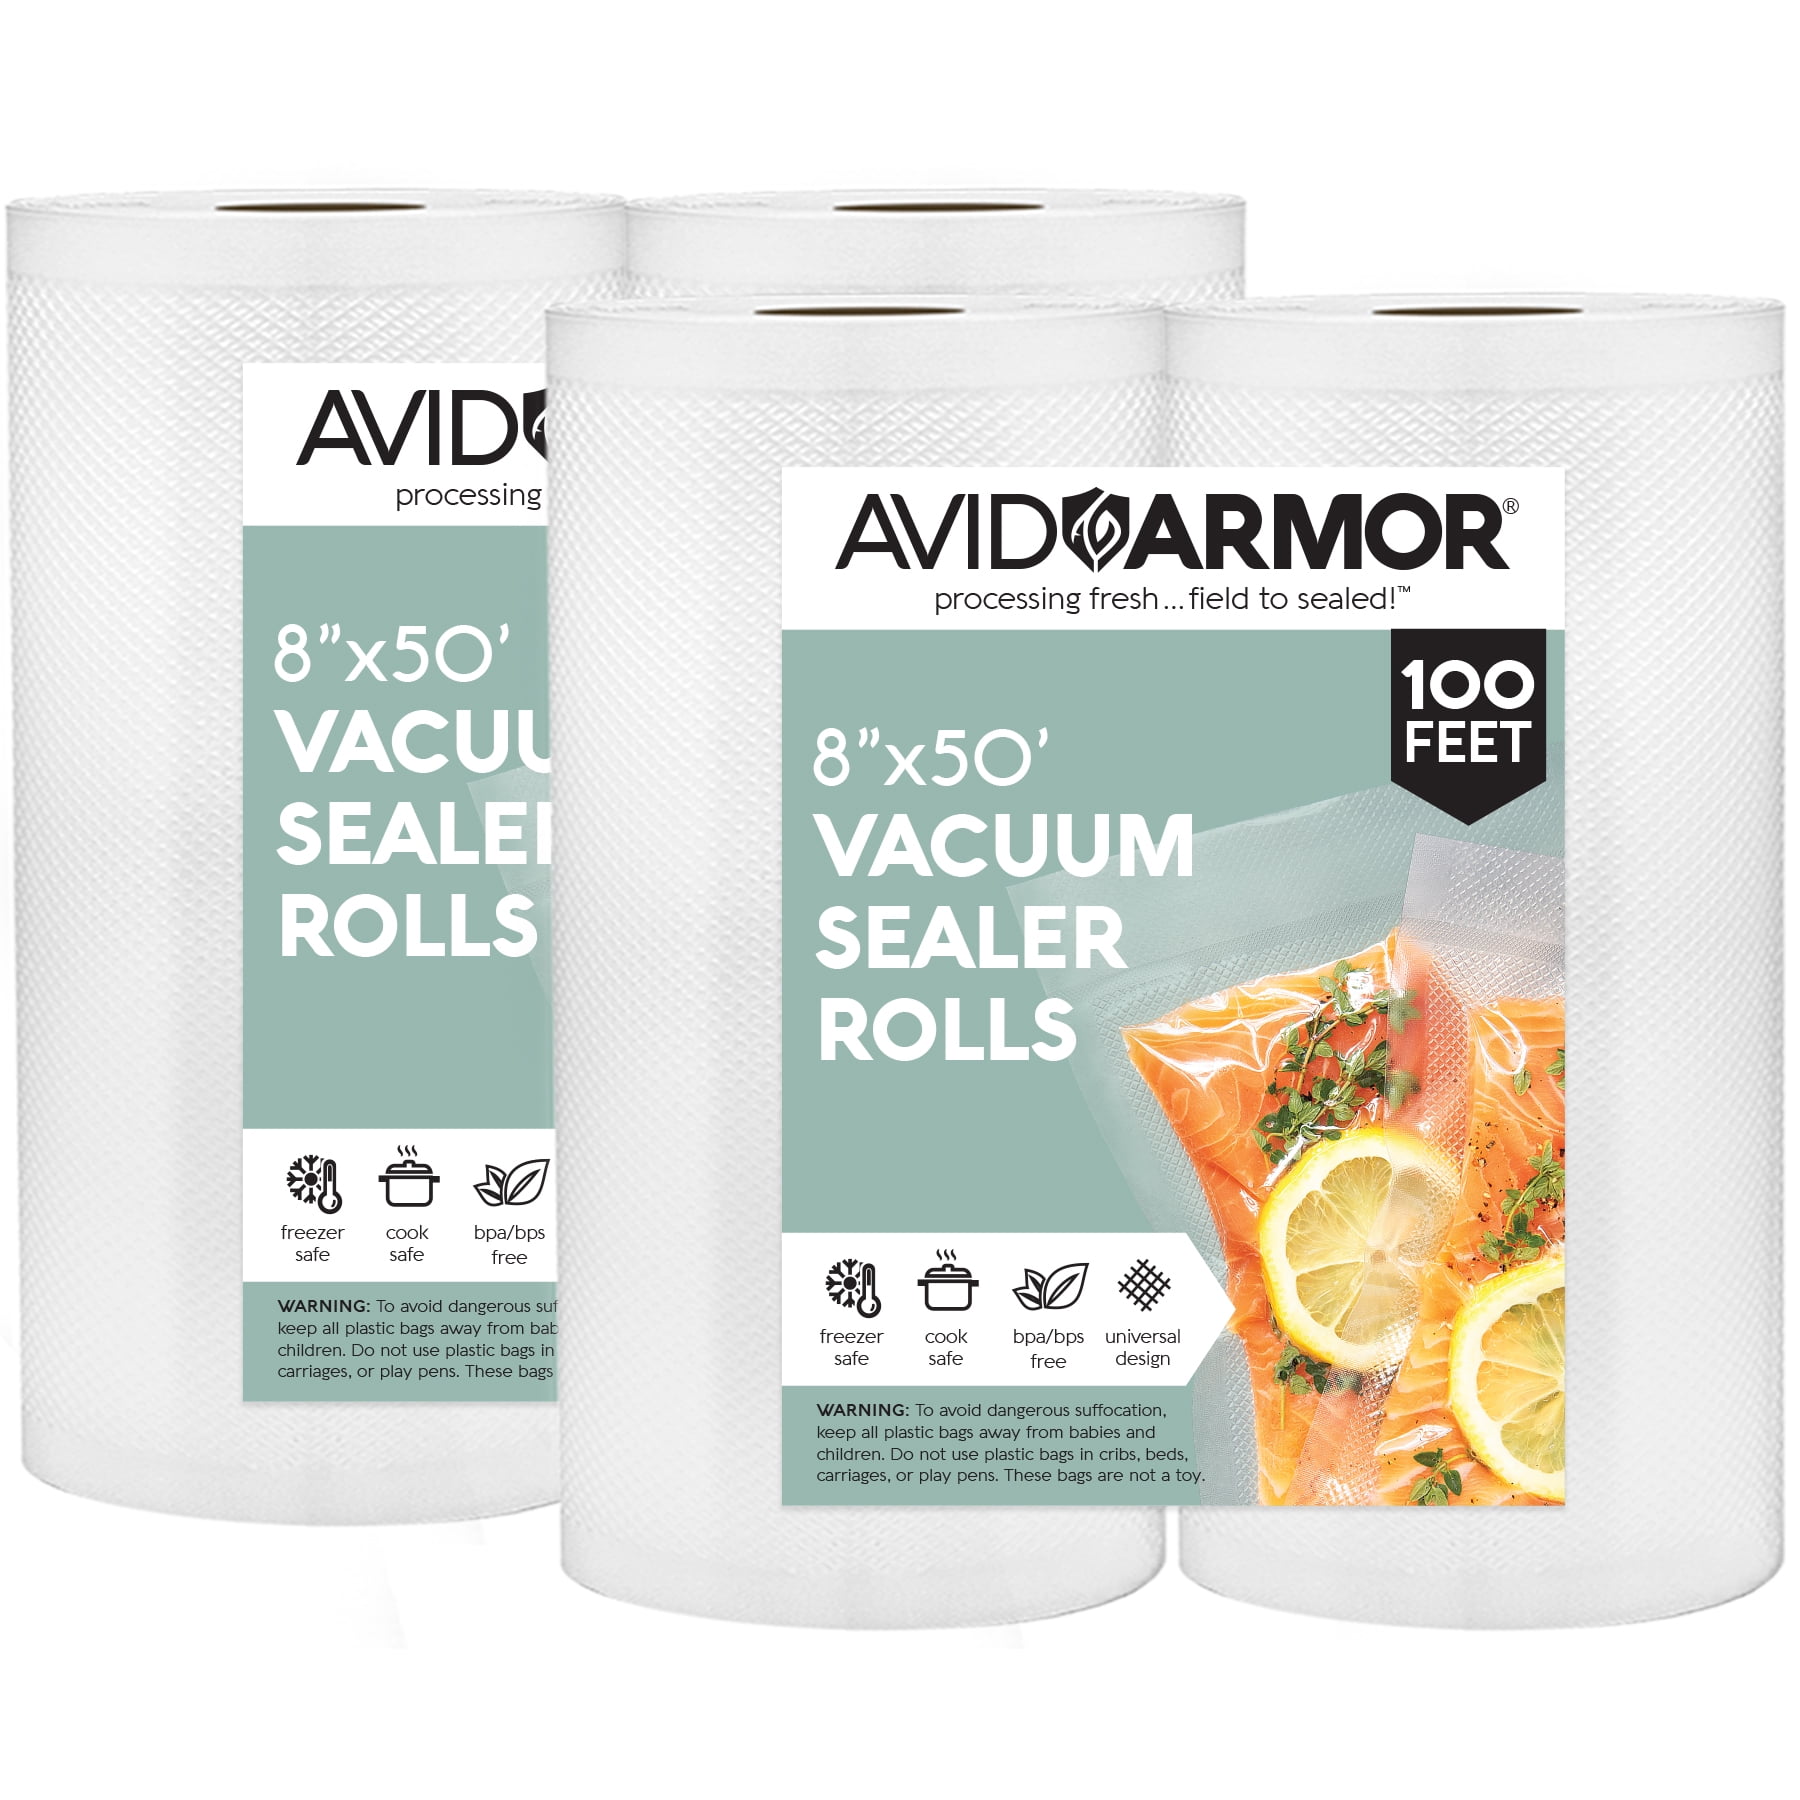 Avid Armor - Vacuum Seal Rolls, Vac Seal Bags for Food Storage, Meal Saver  Freezer Vacuum Sealer Bags, Sous Vide Bags Vacuum Sealer, Non-BPA Vacuum